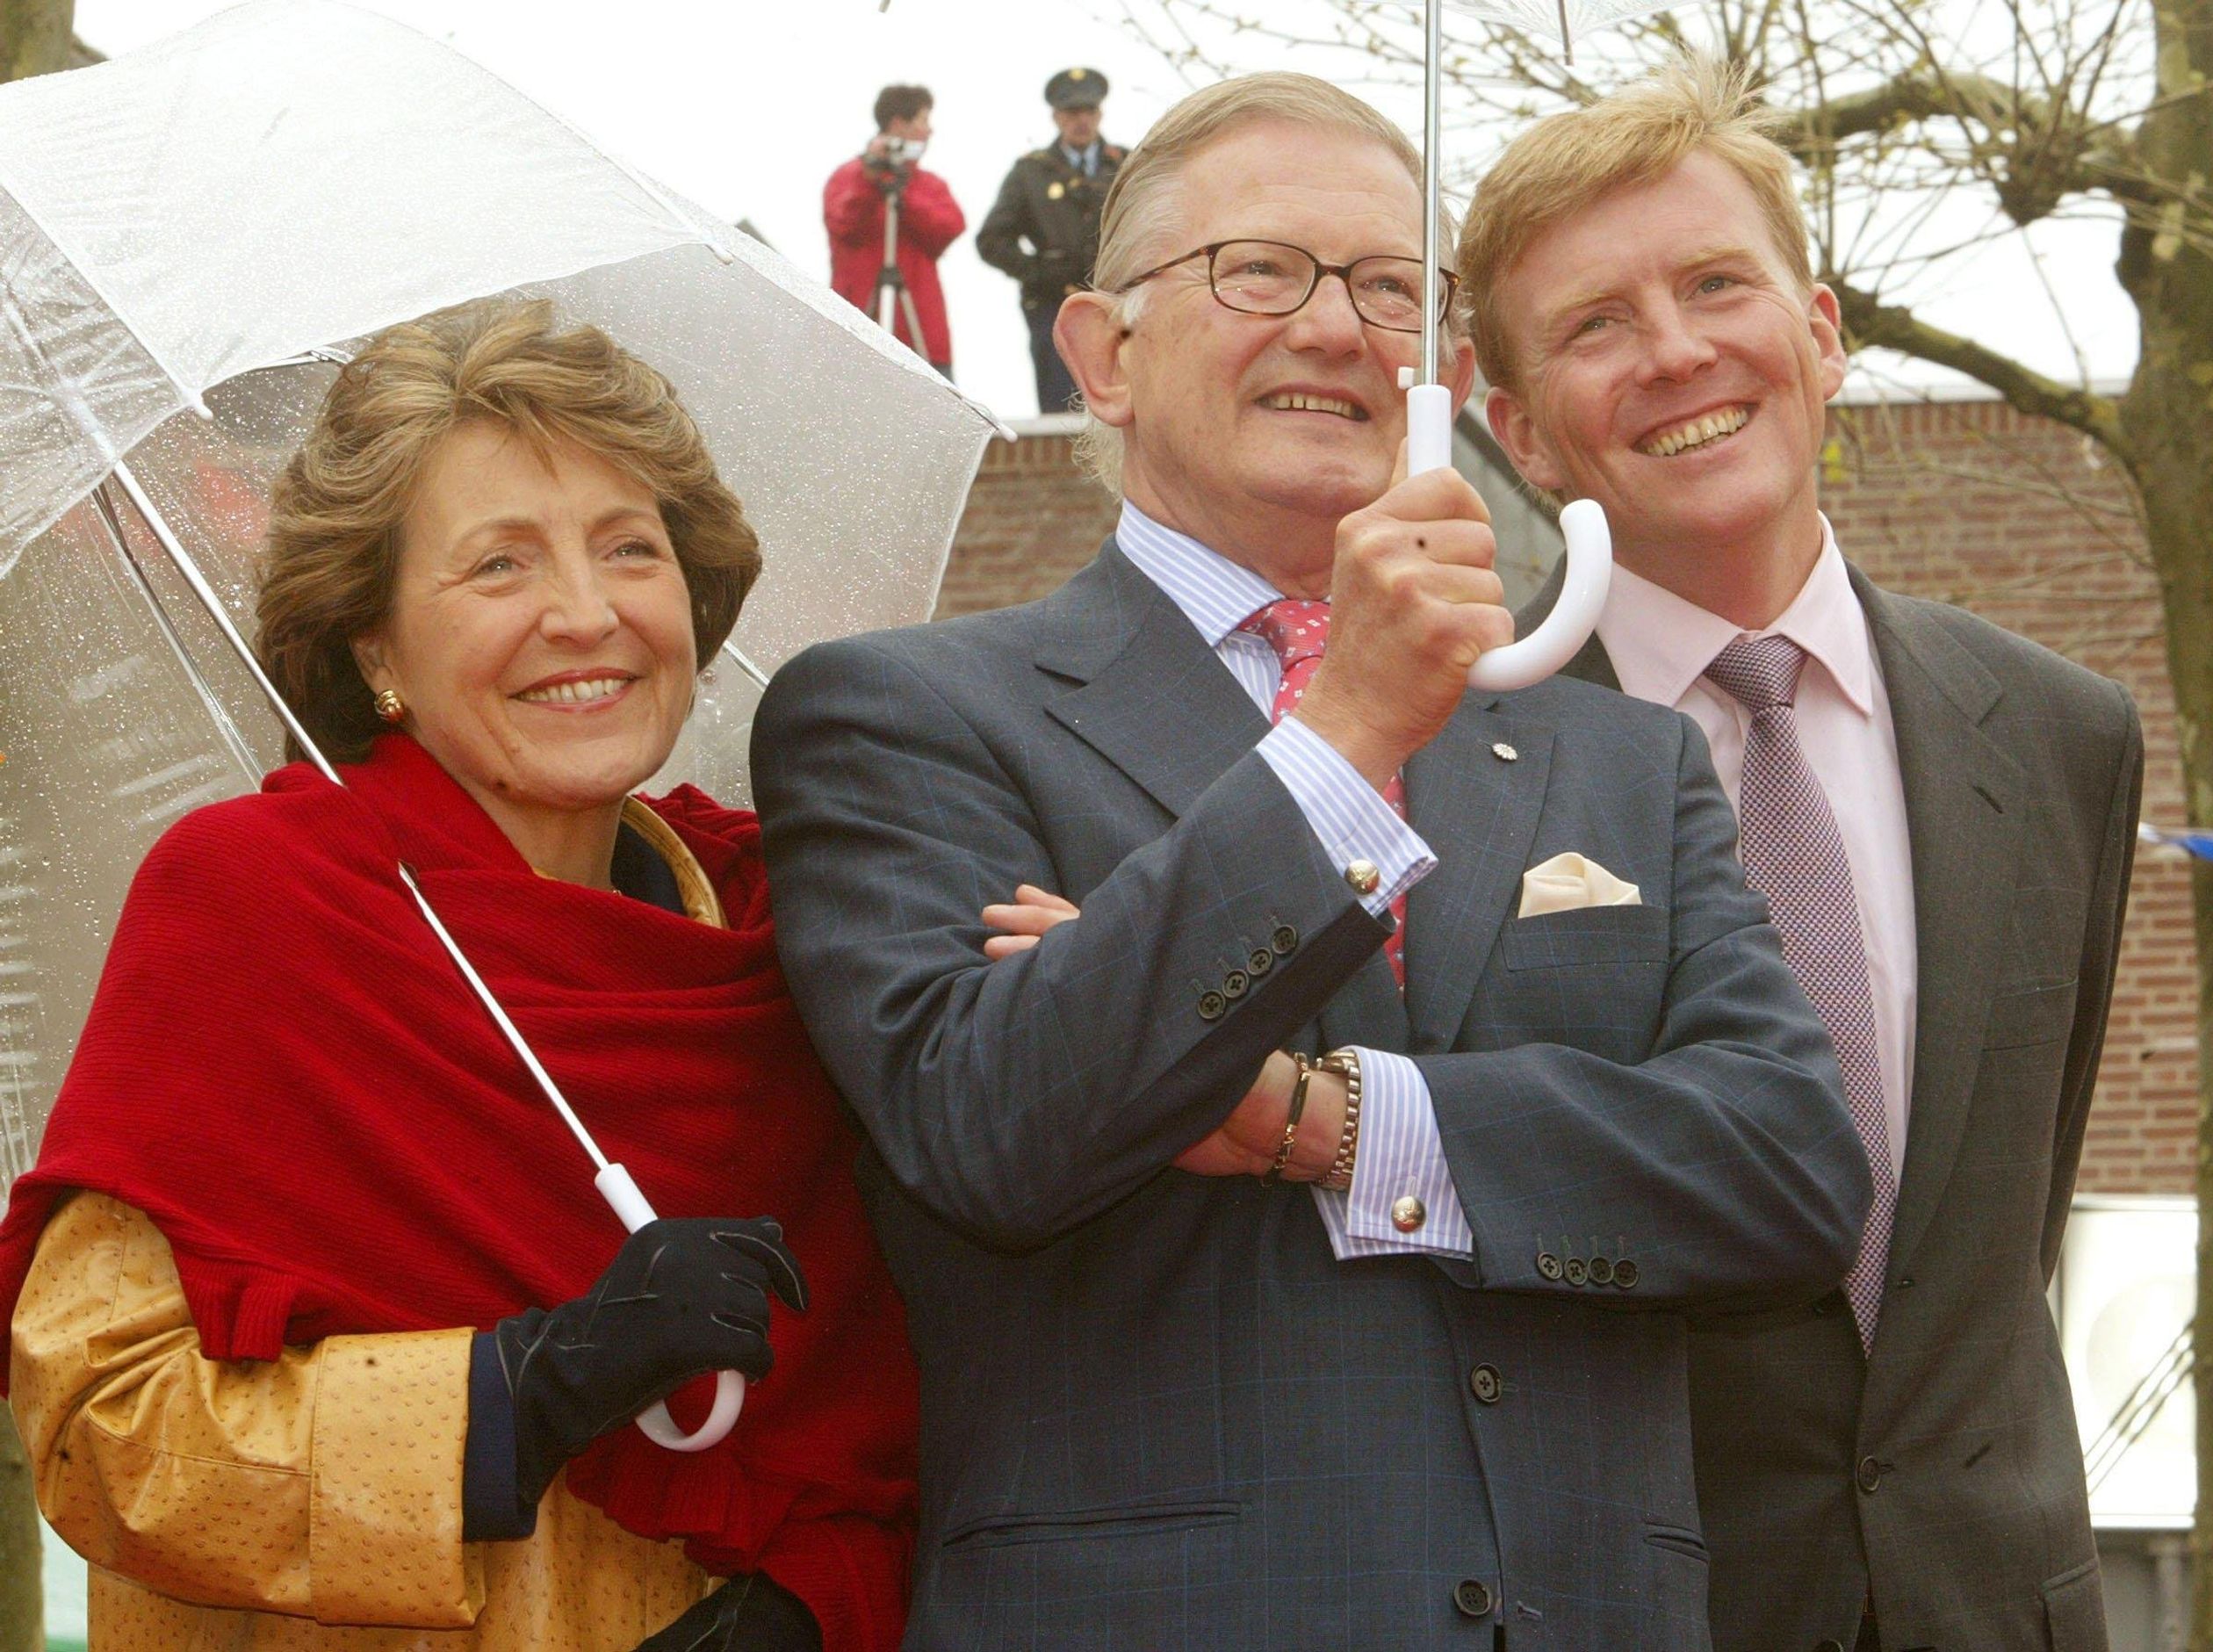 2002: Pieter en Margriet met toenmalige prins Willem-Alexander. "We hebben hem ook duidelijk laten